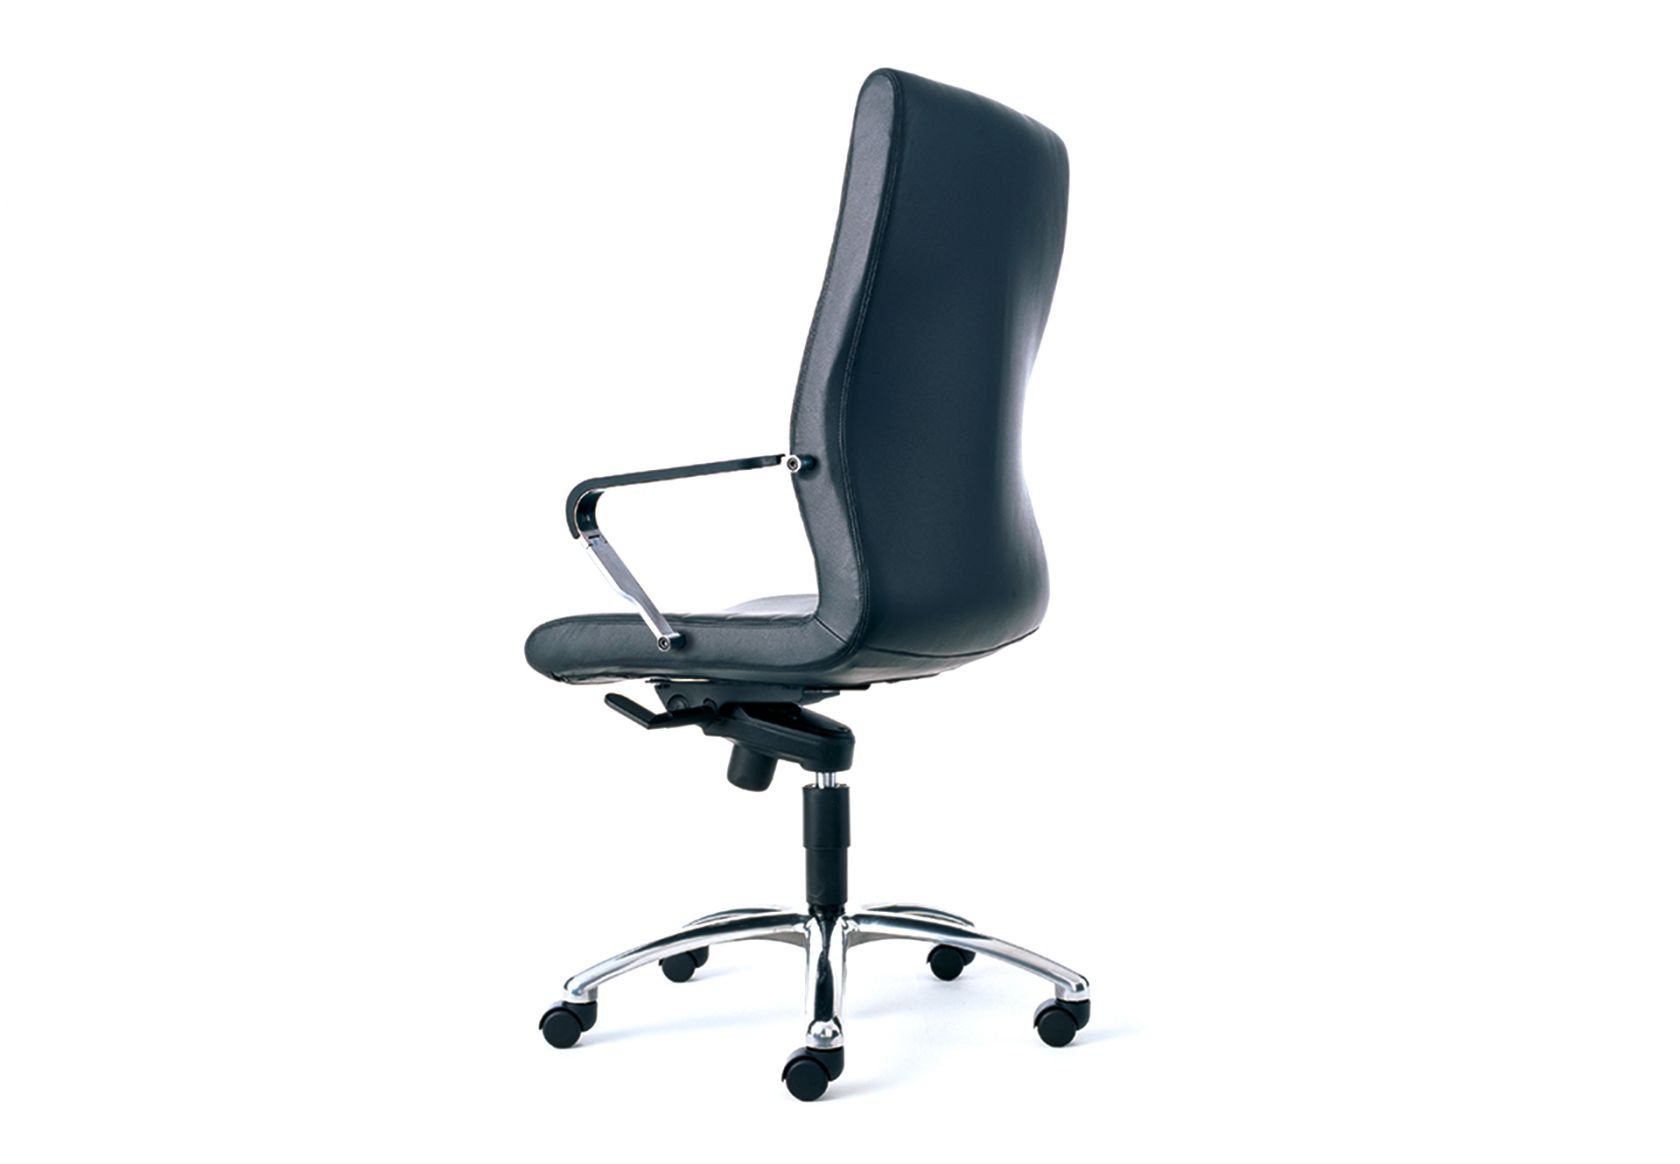 Uniflex Chair